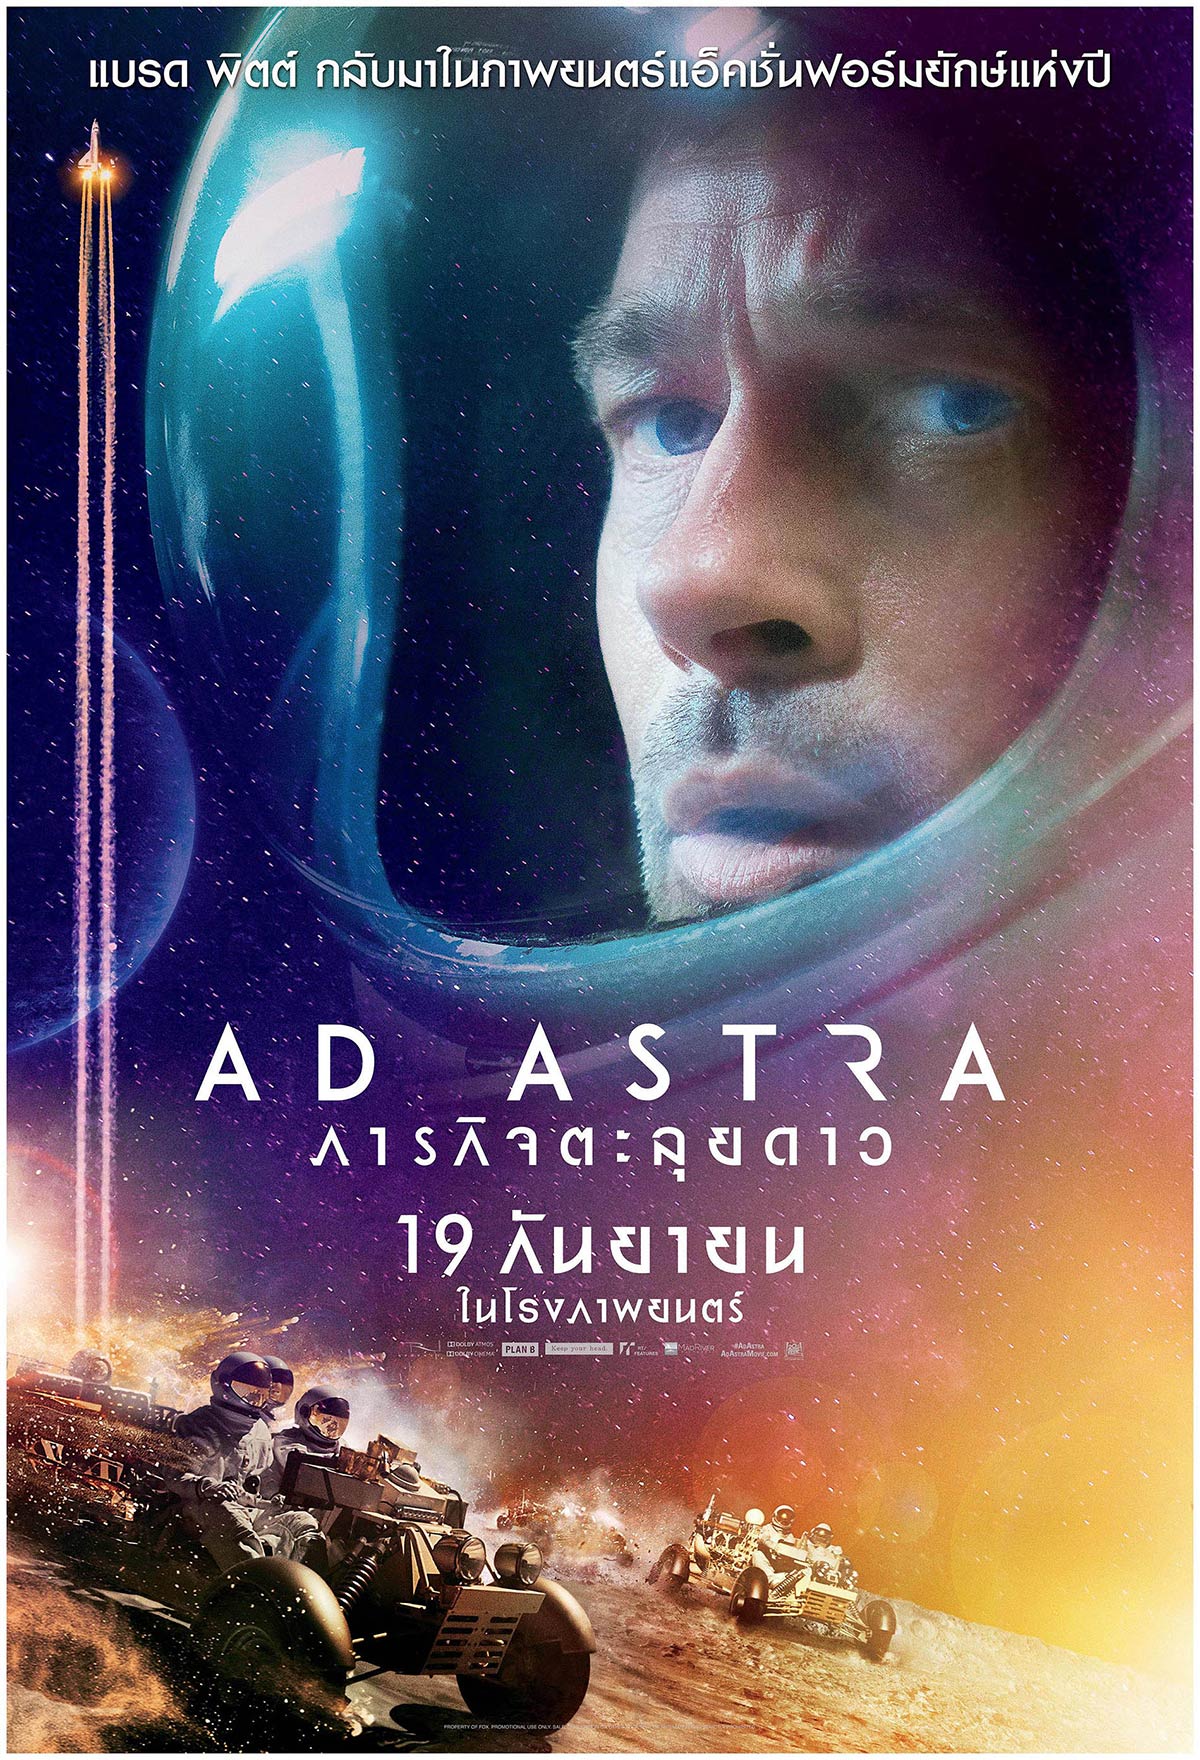 ดูหนังออนไลน์ Ad.Astra.2019